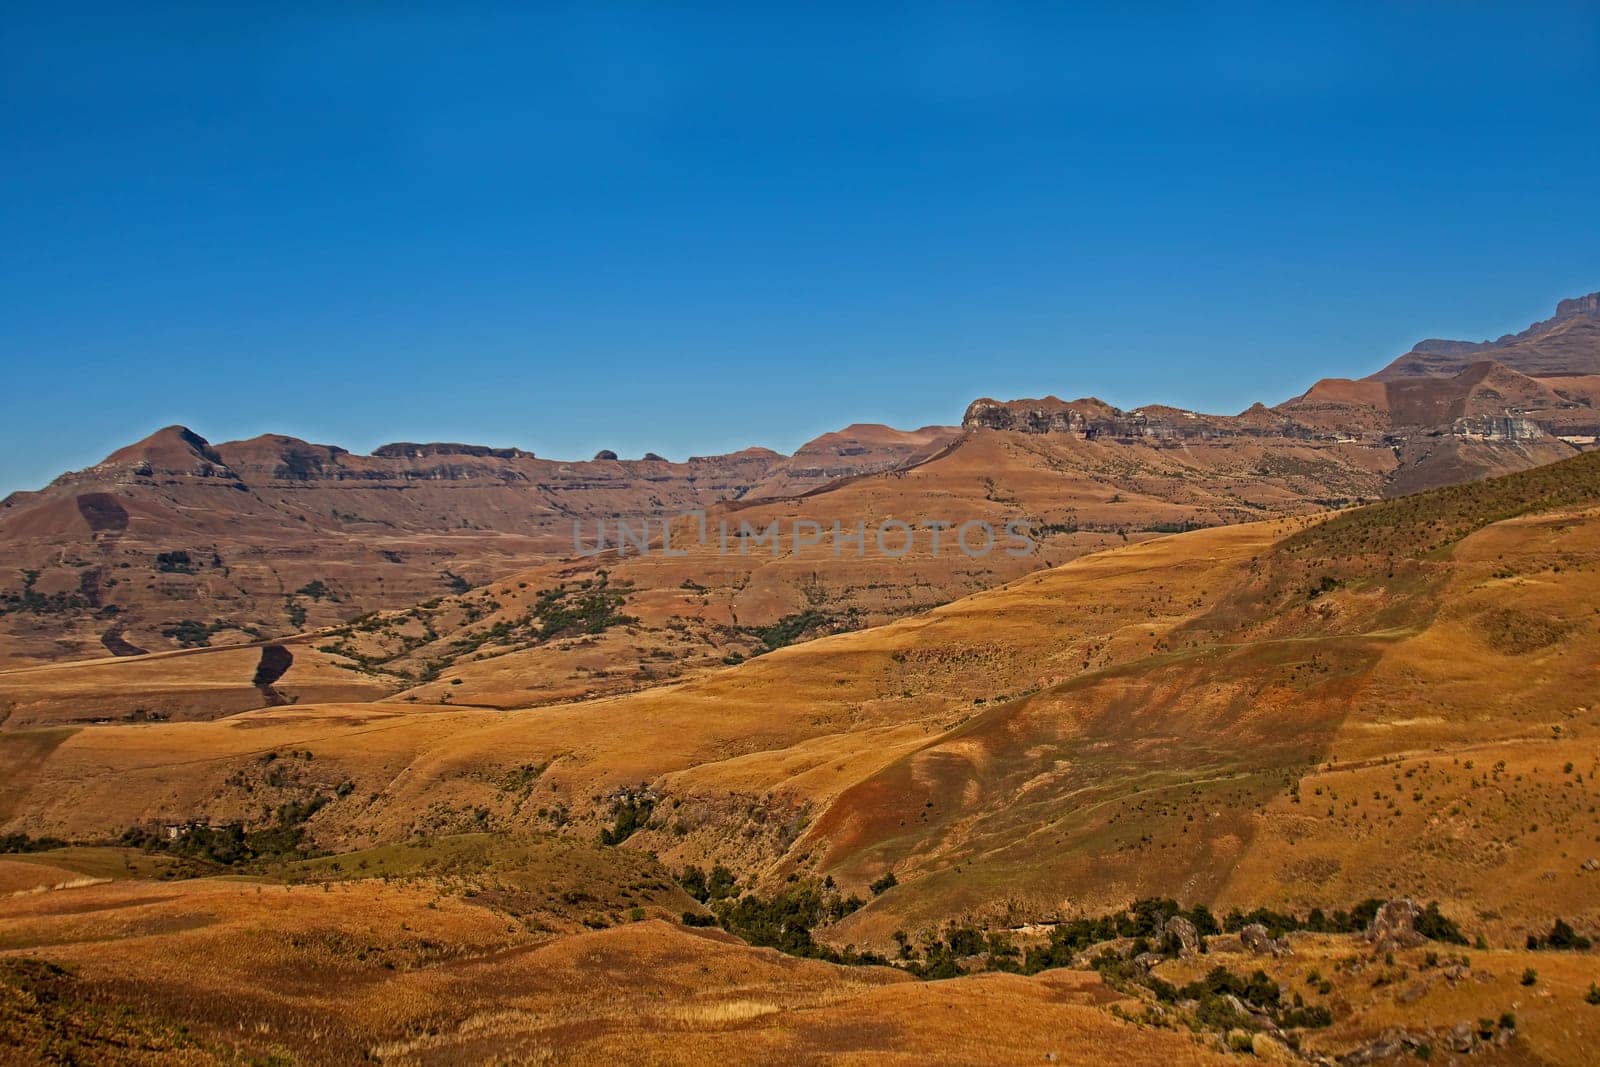 Drakensberg Mountain scene 15512 by kobus_peche